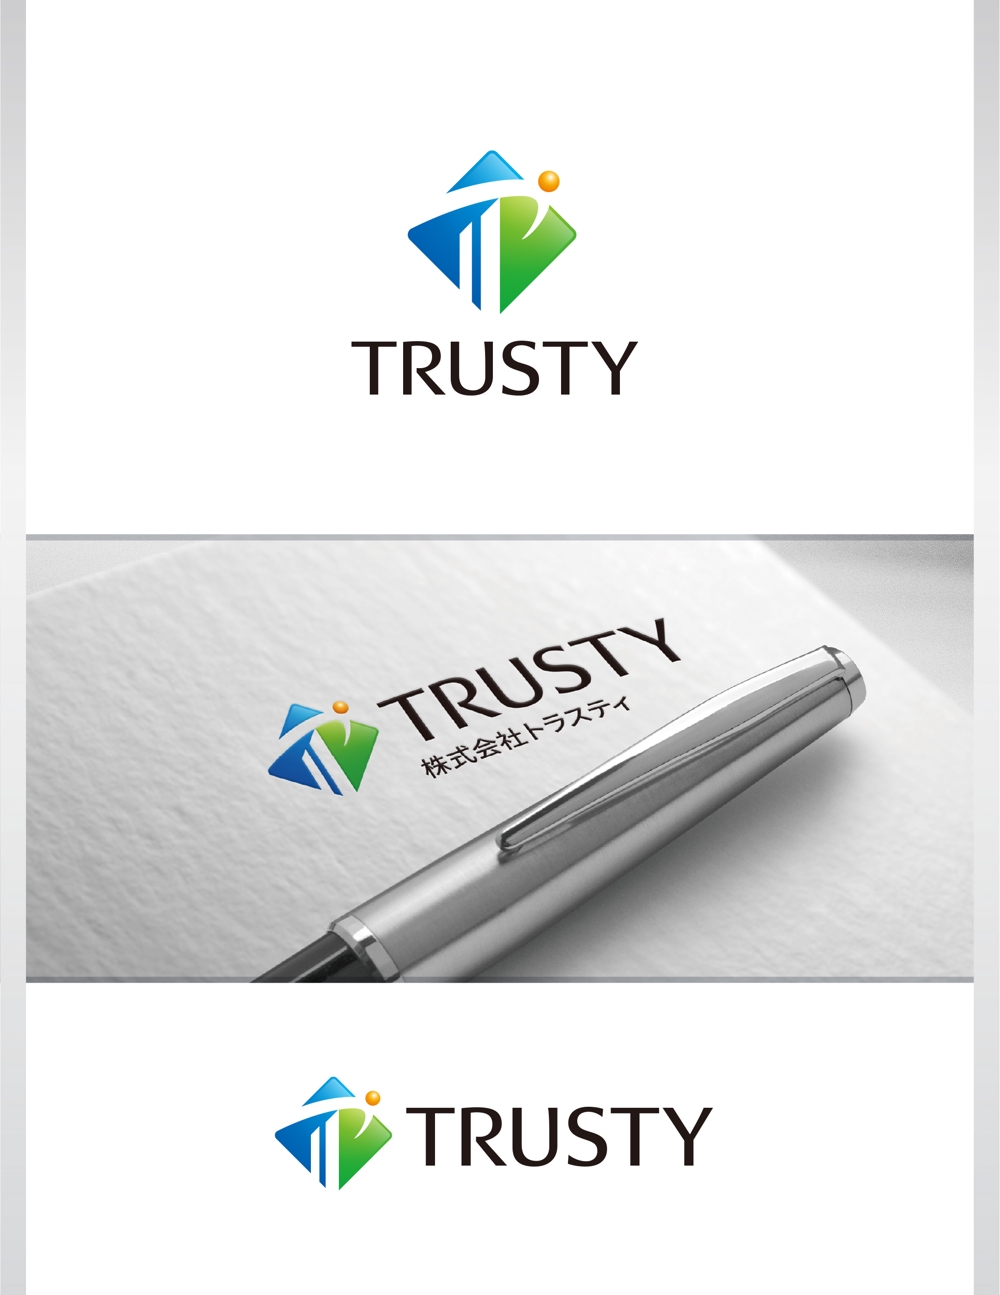 不動産会社「株式会社トラスティ」のロゴ